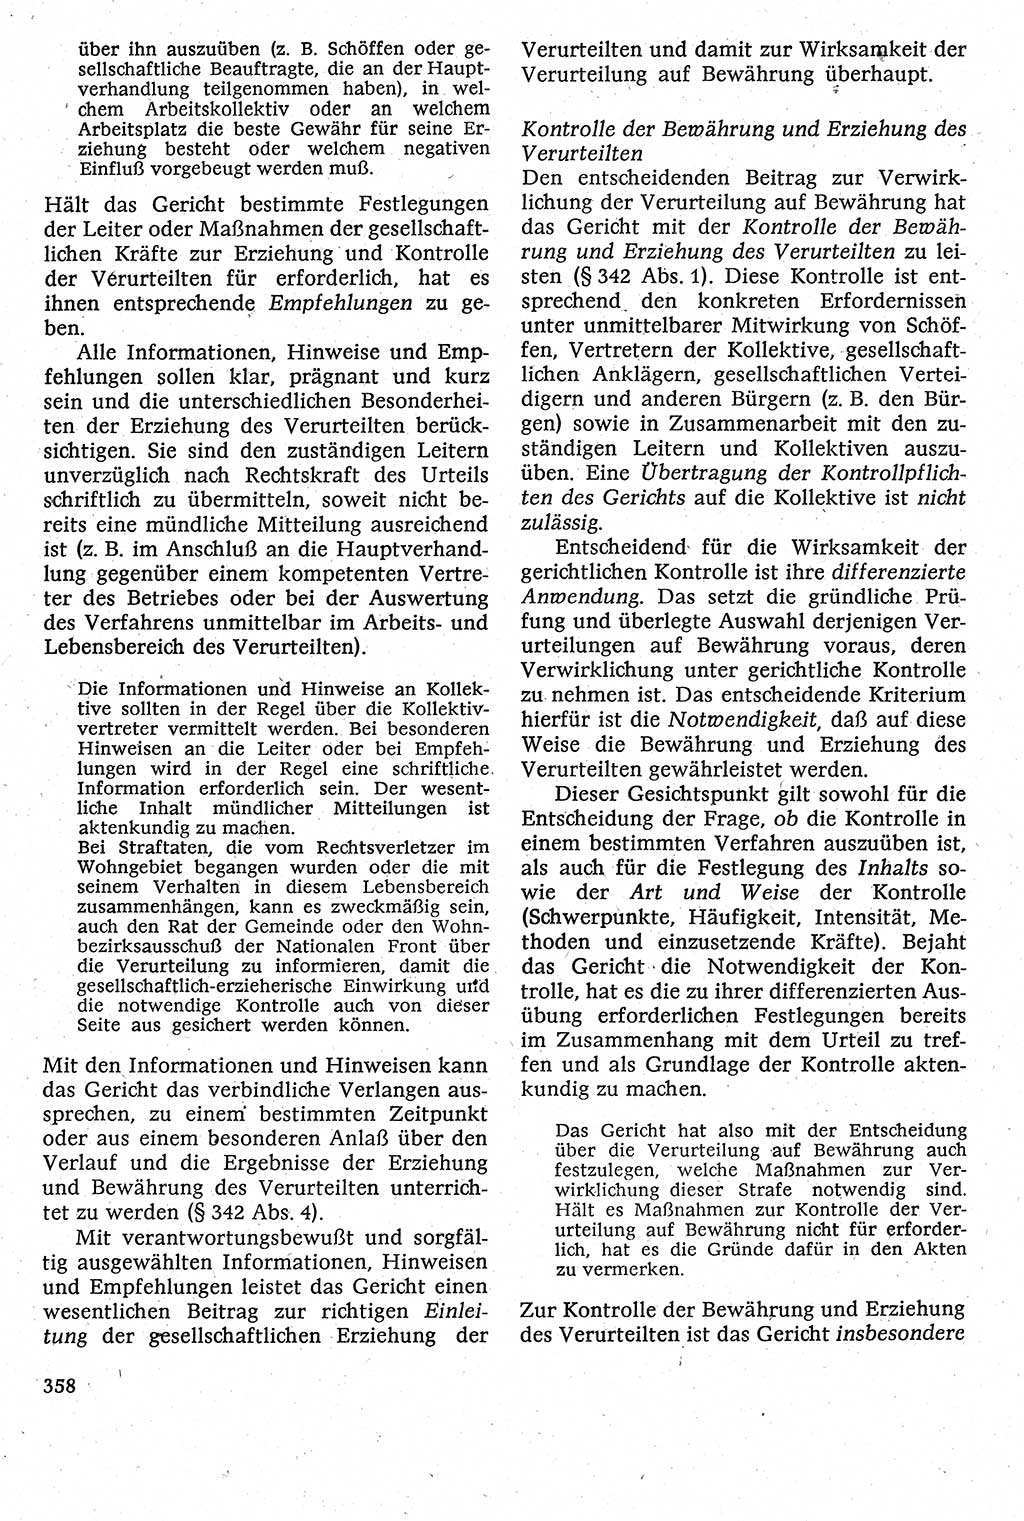 Strafverfahrensrecht [Deutsche Demokratische Republik (DDR)], Lehrbuch 1982, Seite 358 (Strafverf.-R. DDR Lb. 1982, S. 358)